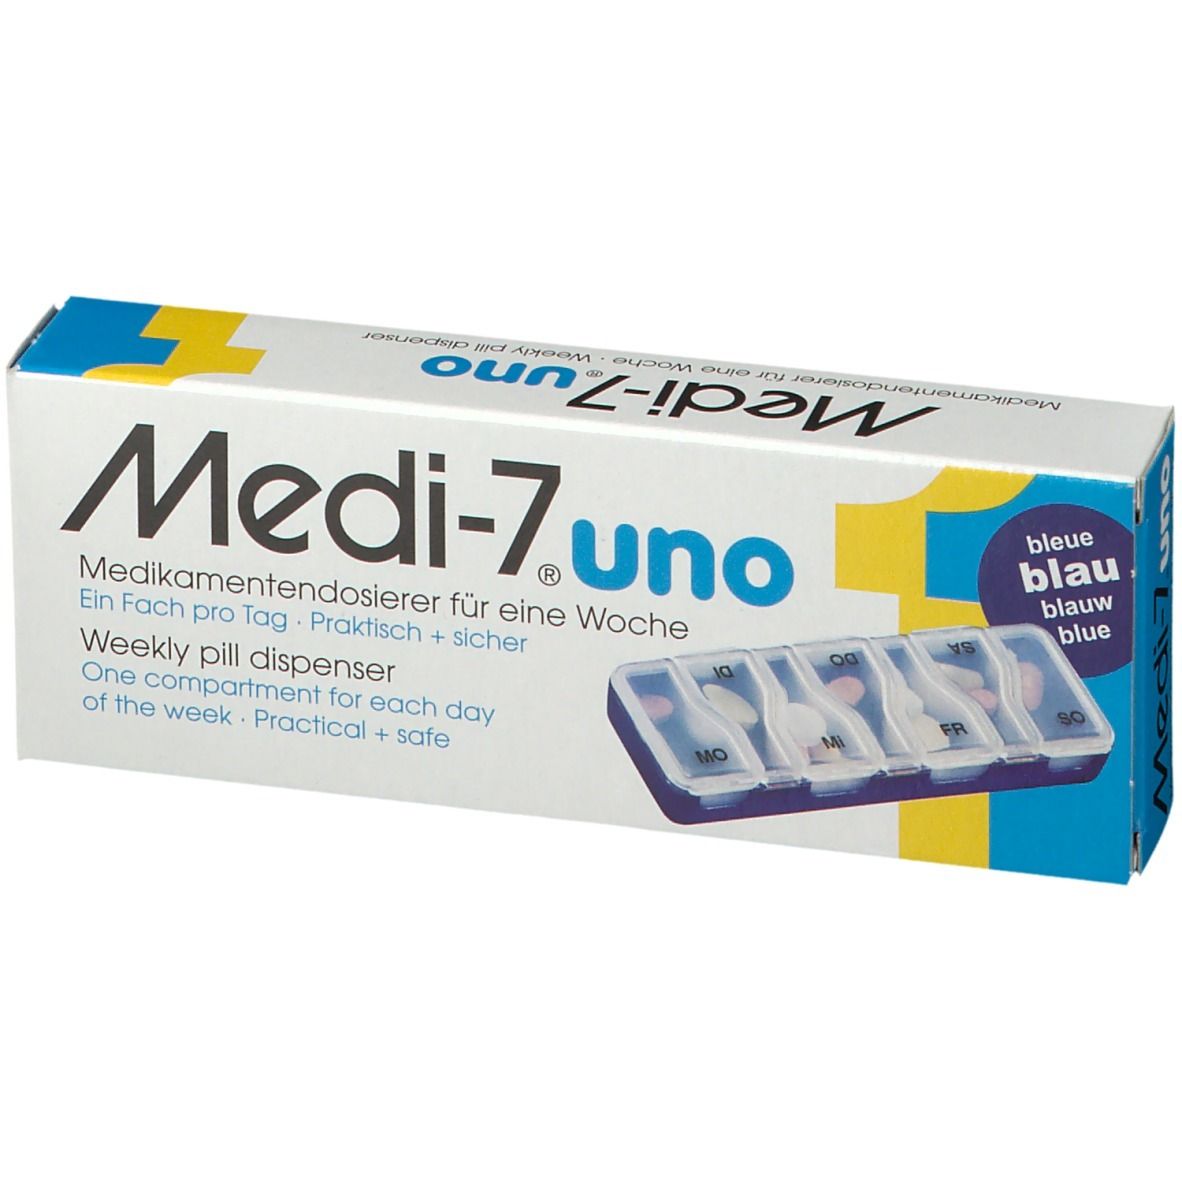 Medi-7 uno Blau Medikamenten Dosierer für 7 Tage